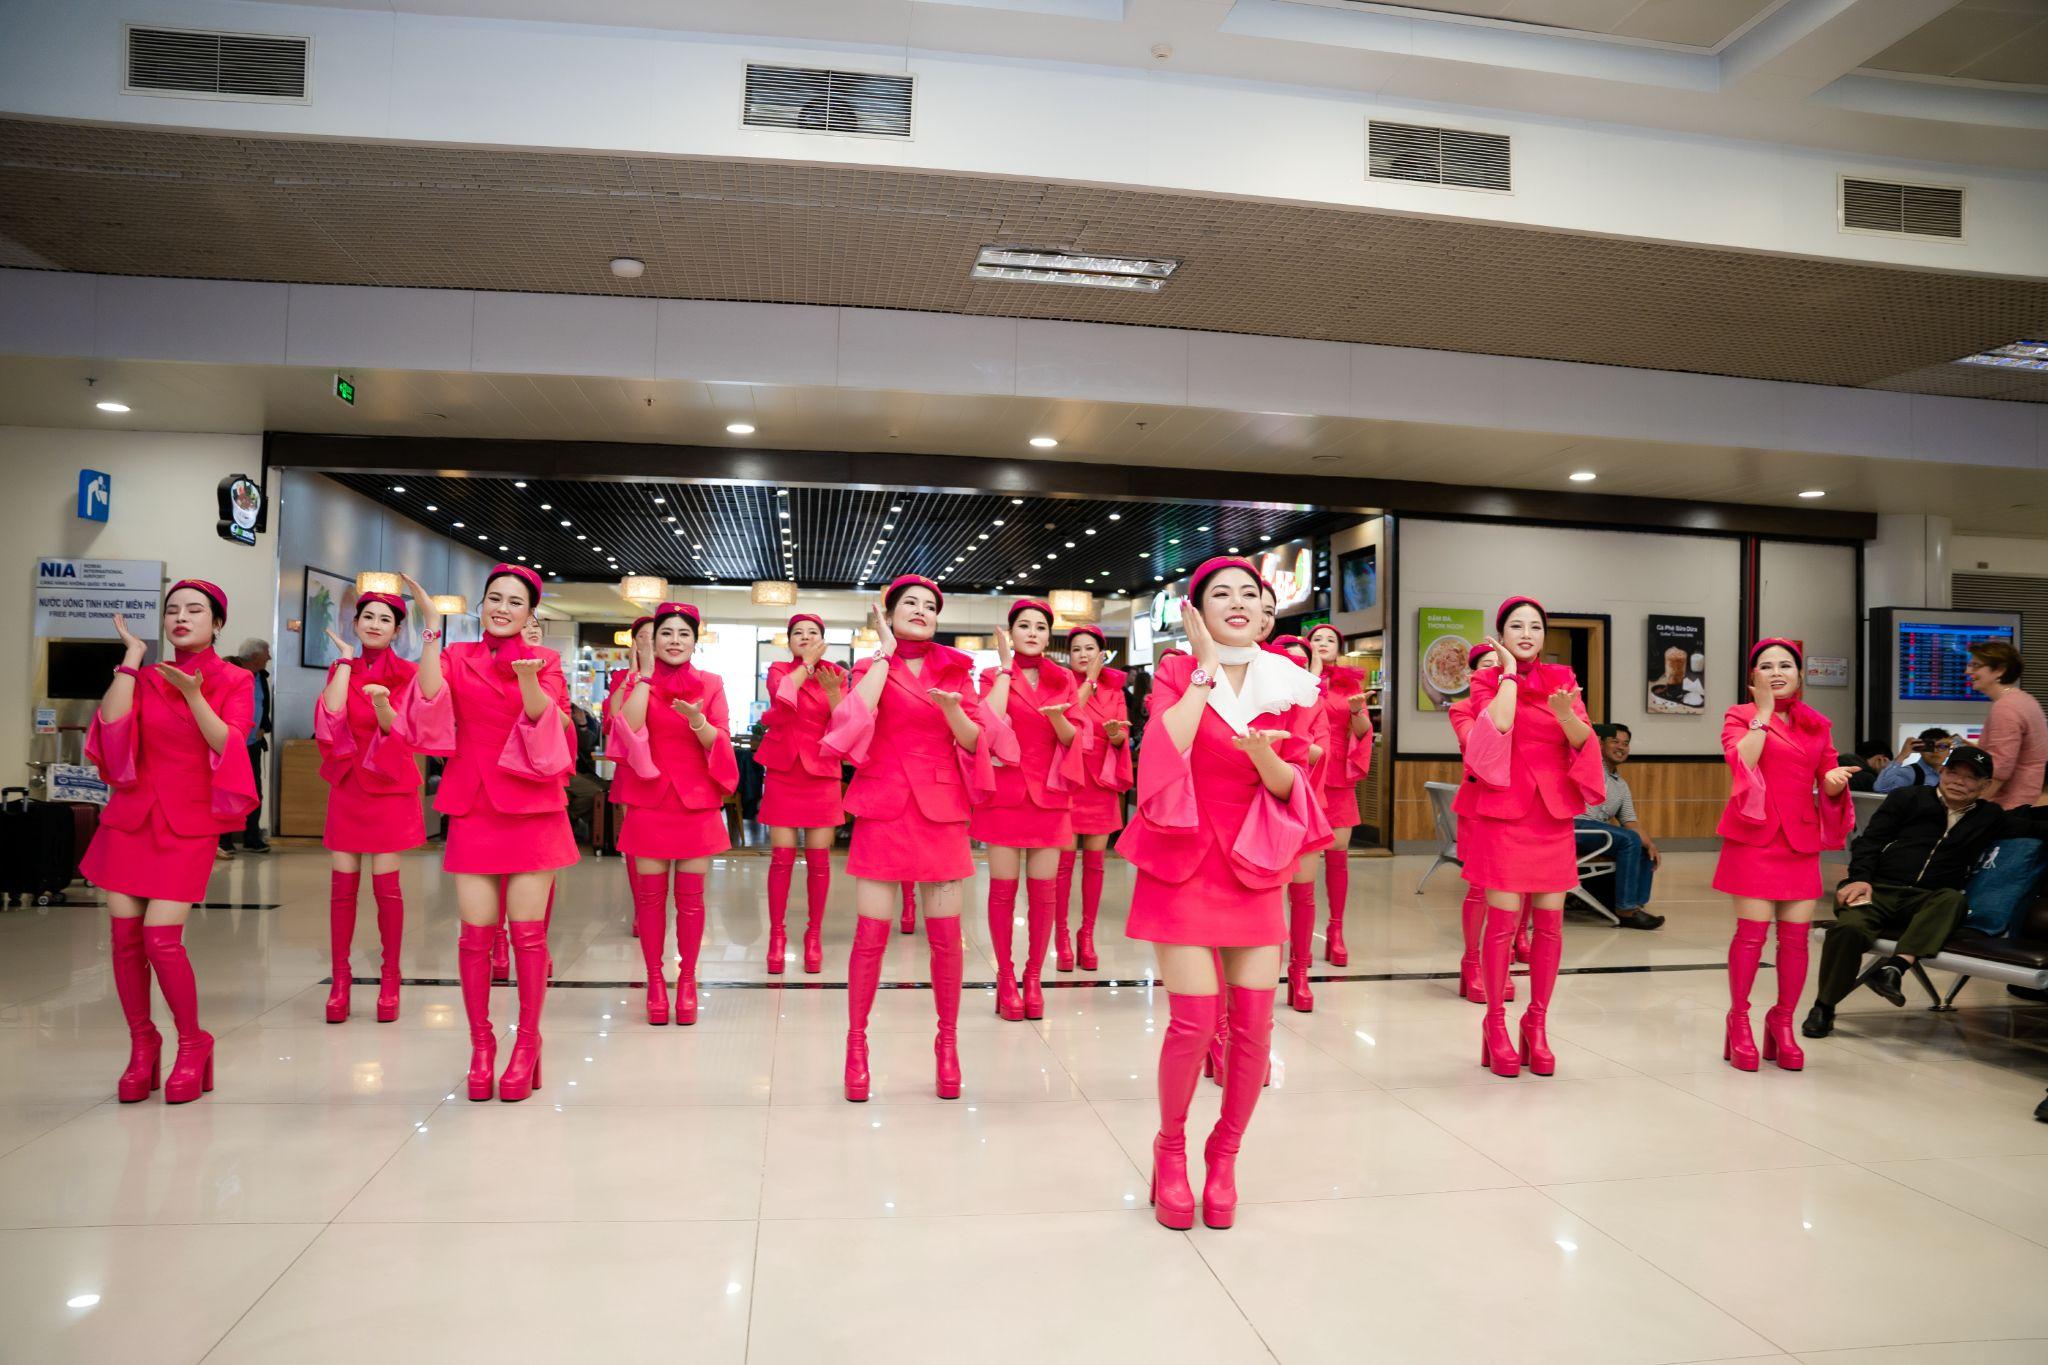 Màn nhảy flashmob khiến cho không khí tẻ nhạt của sân bay trở nên sống động